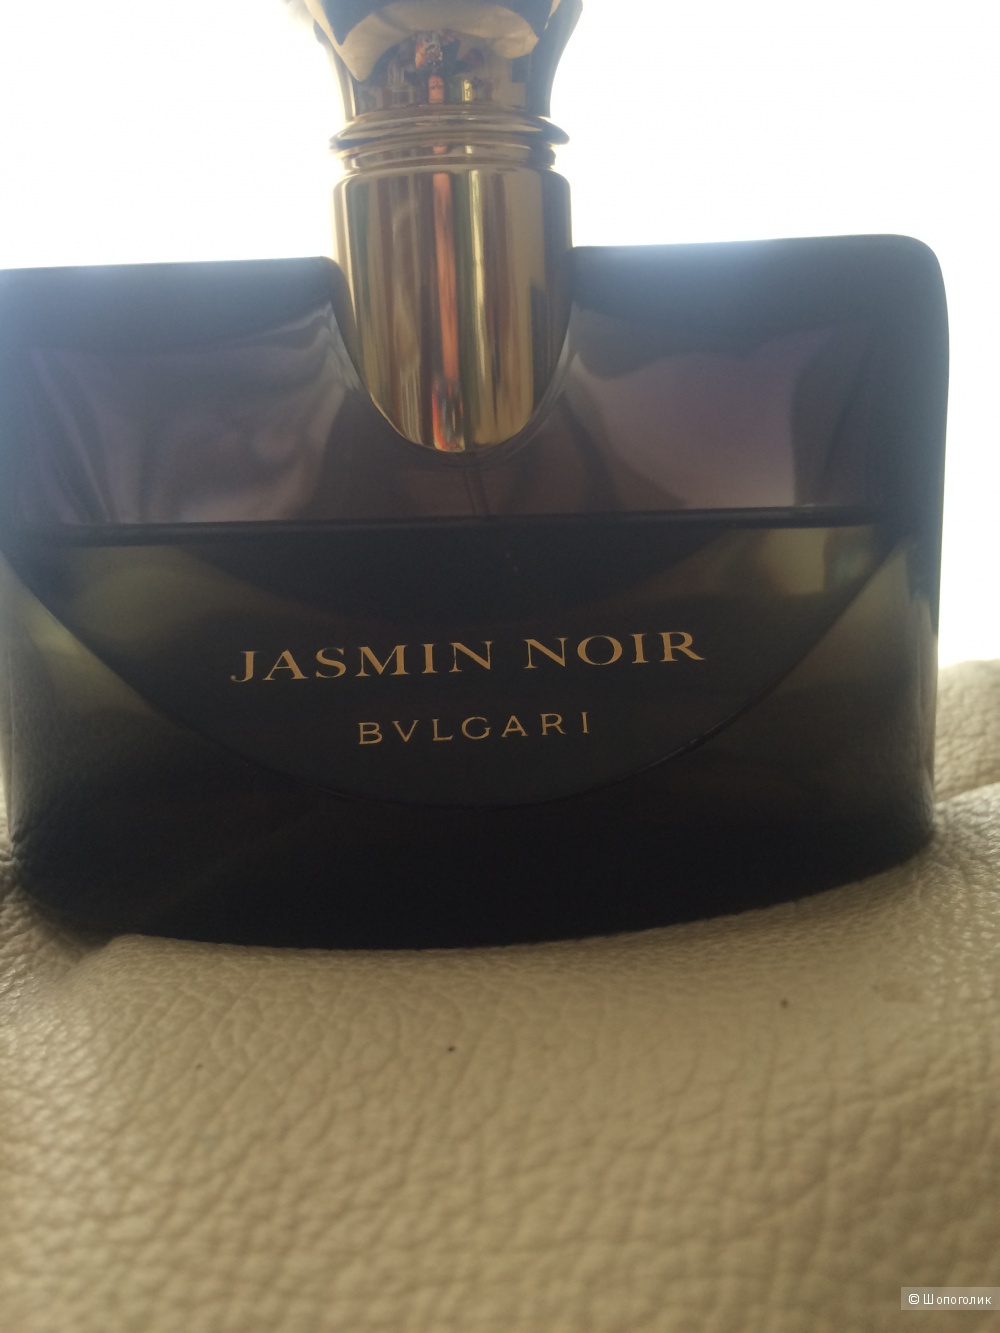 Jasmin Noir, Bvlgari. 100 ml